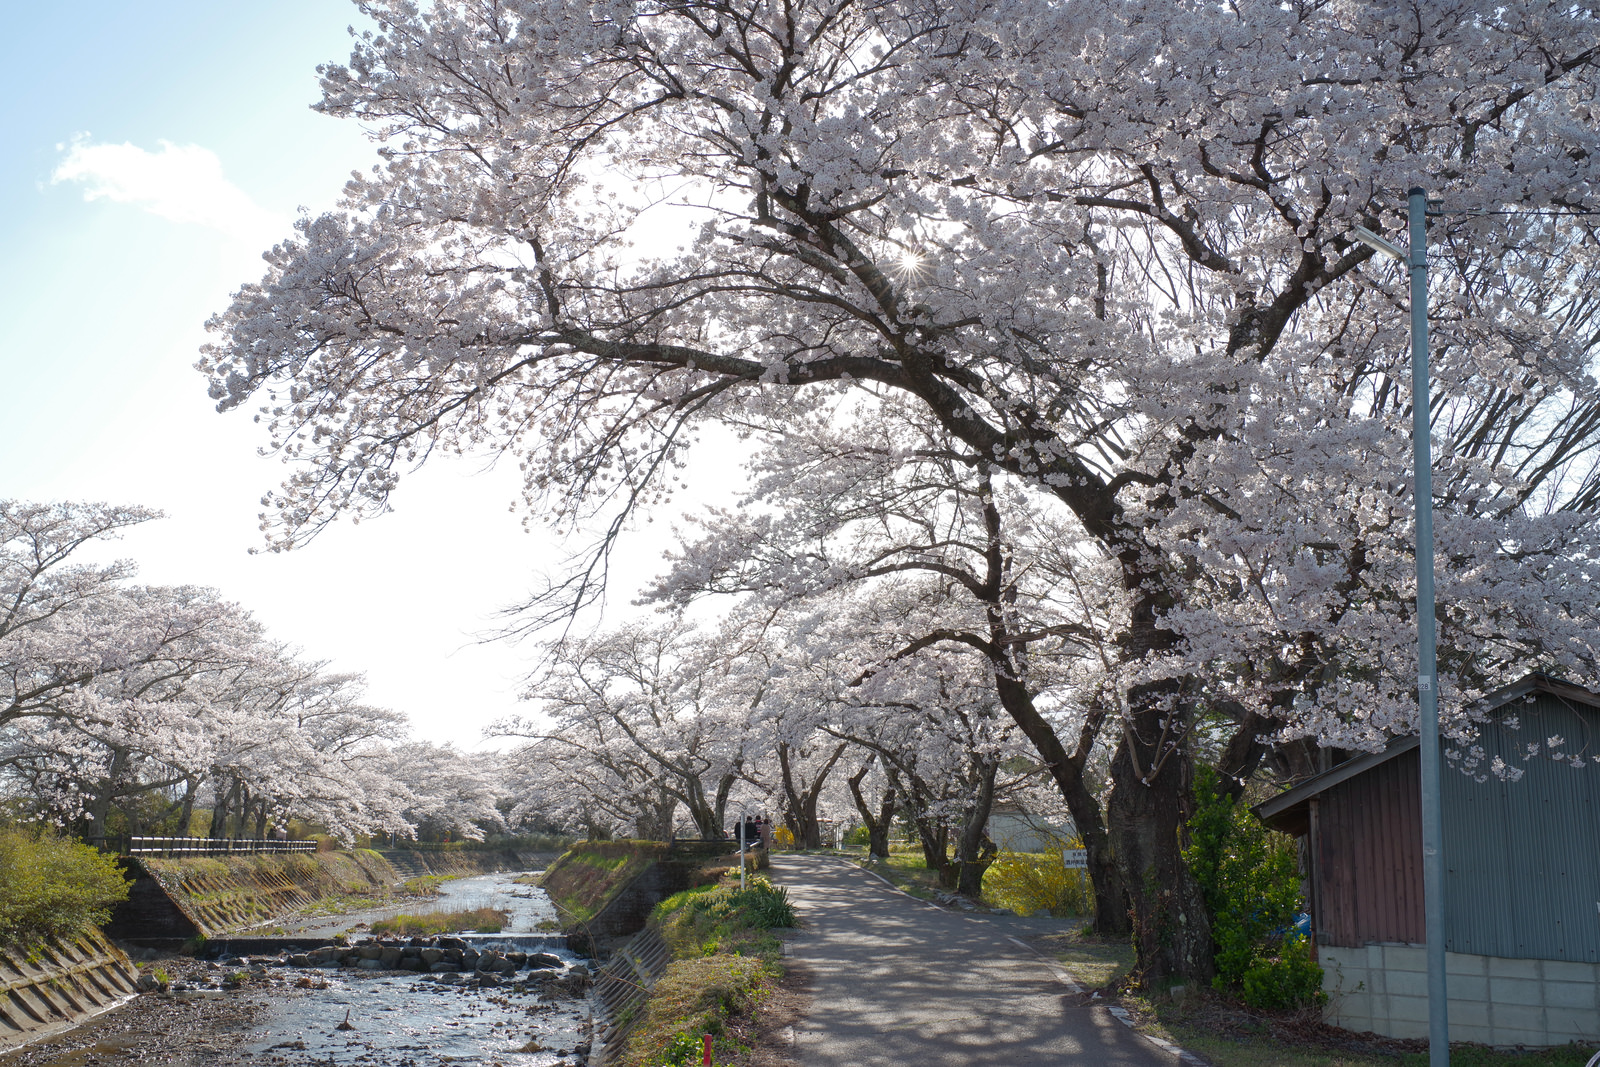 「笹原川の千本桜から見える光芒と花見客 | フリー素材のぱくたそ」の写真